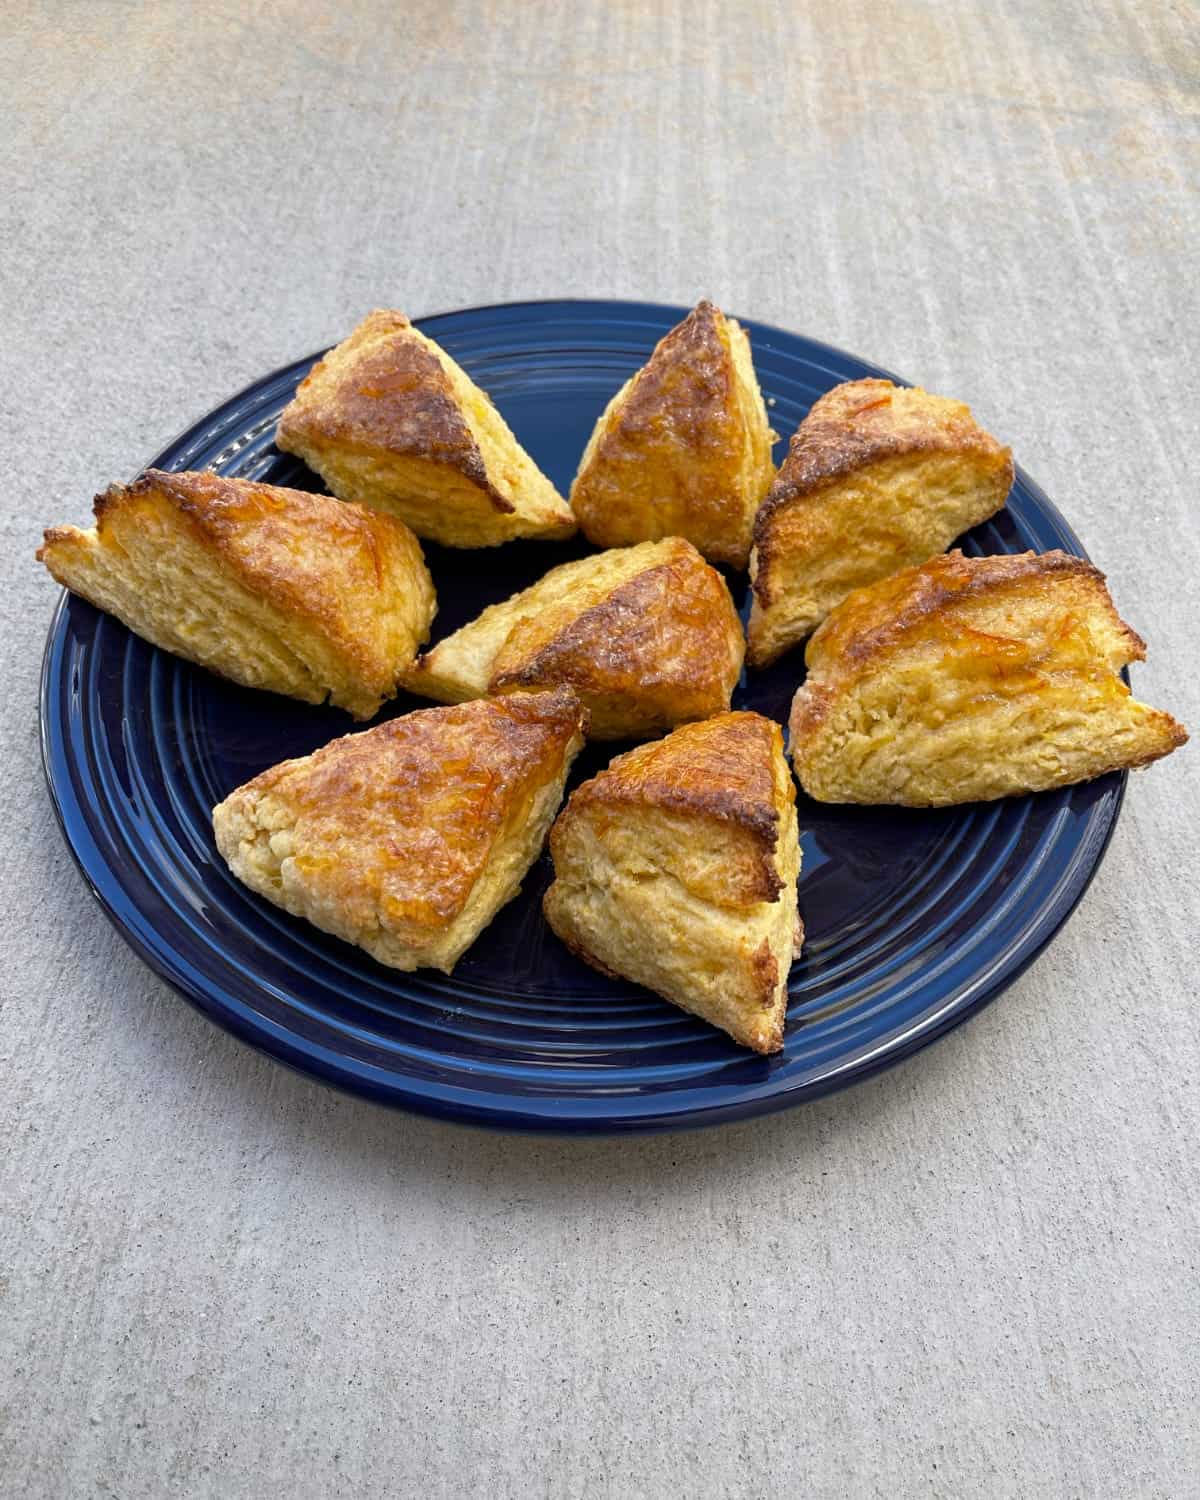 Fresh baked orange scones on blue platter.